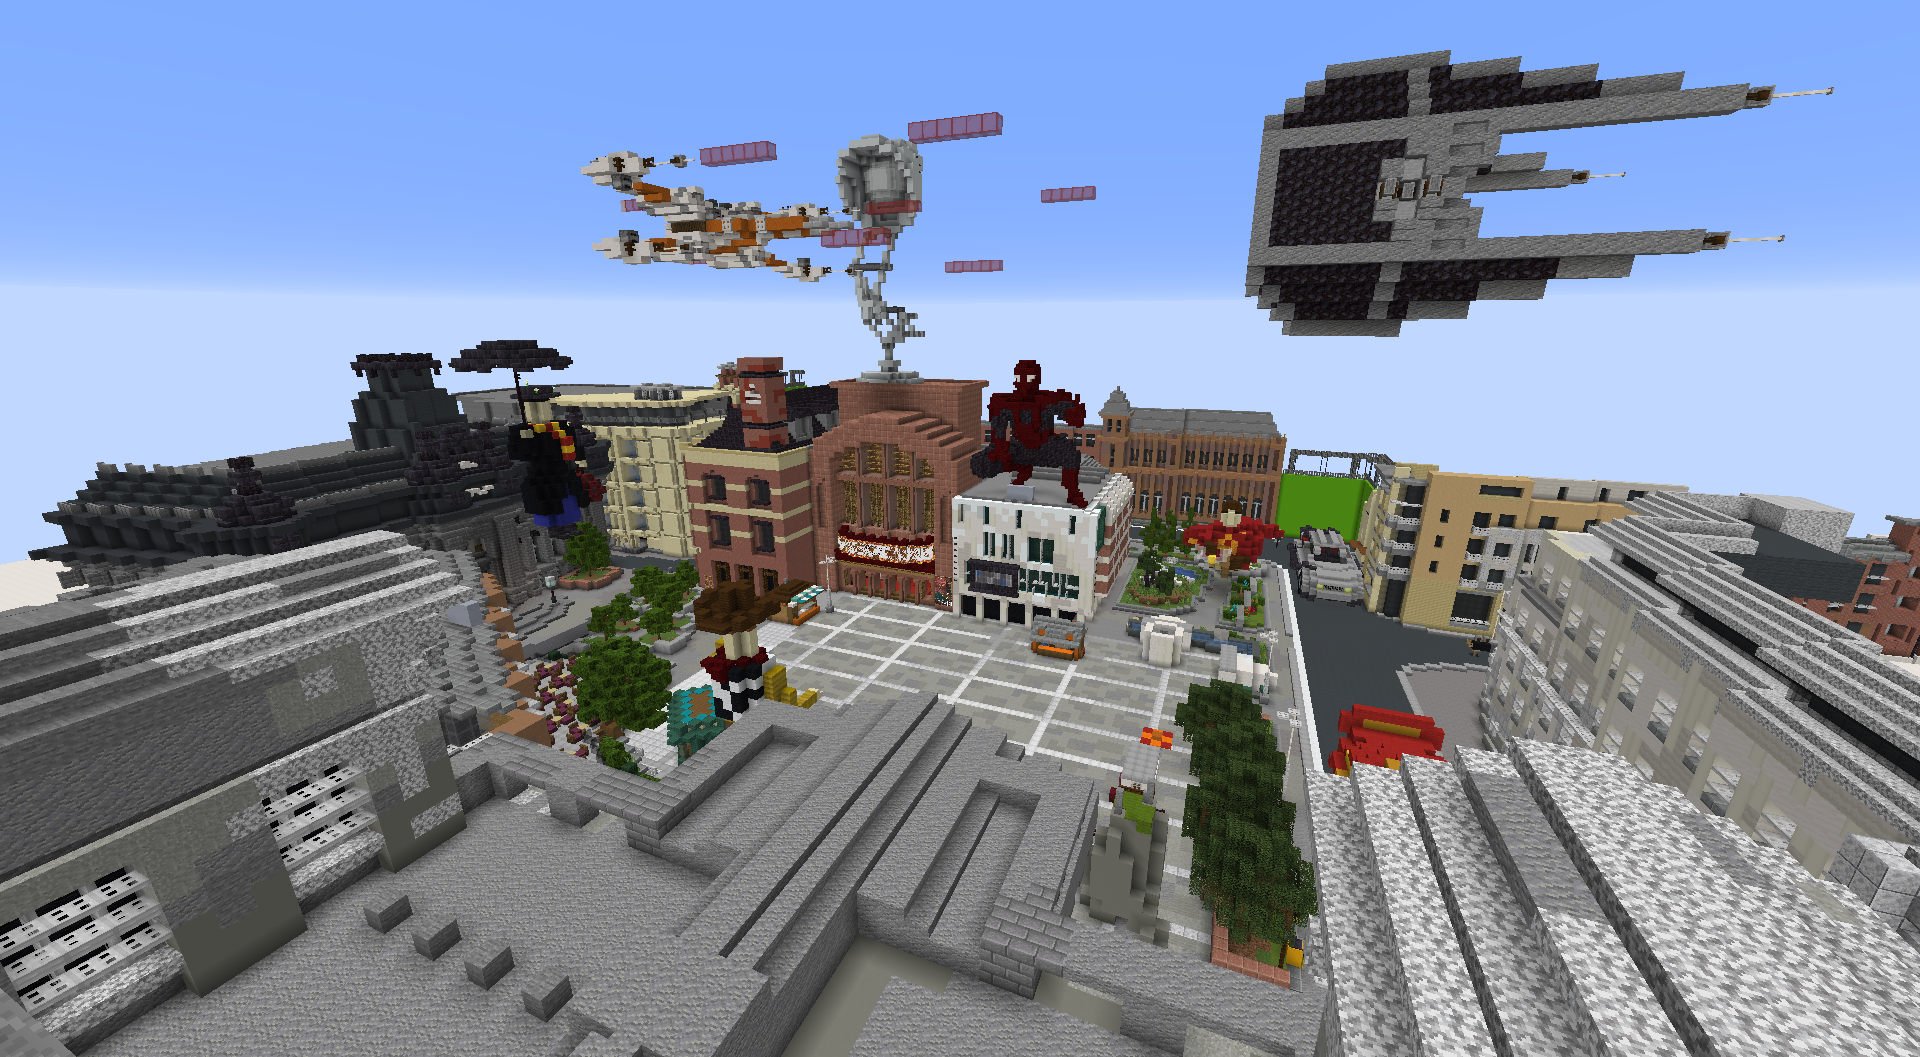 Minecraft Millennium Square image